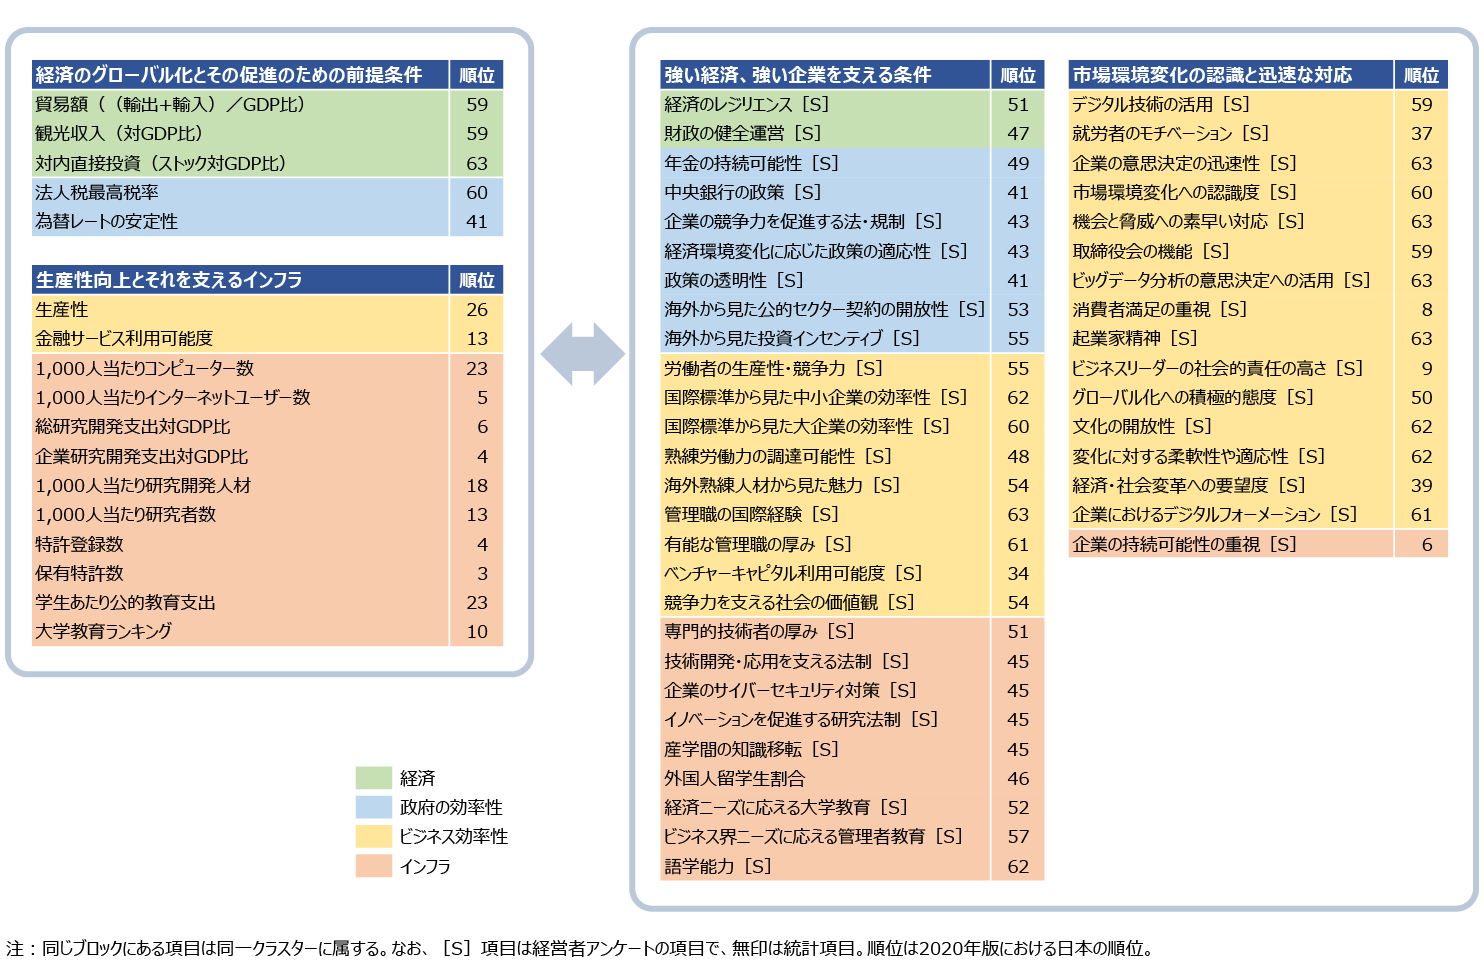 図1　IMD「世界競争力年鑑2020」を用いた個別項目のクラスター分類 